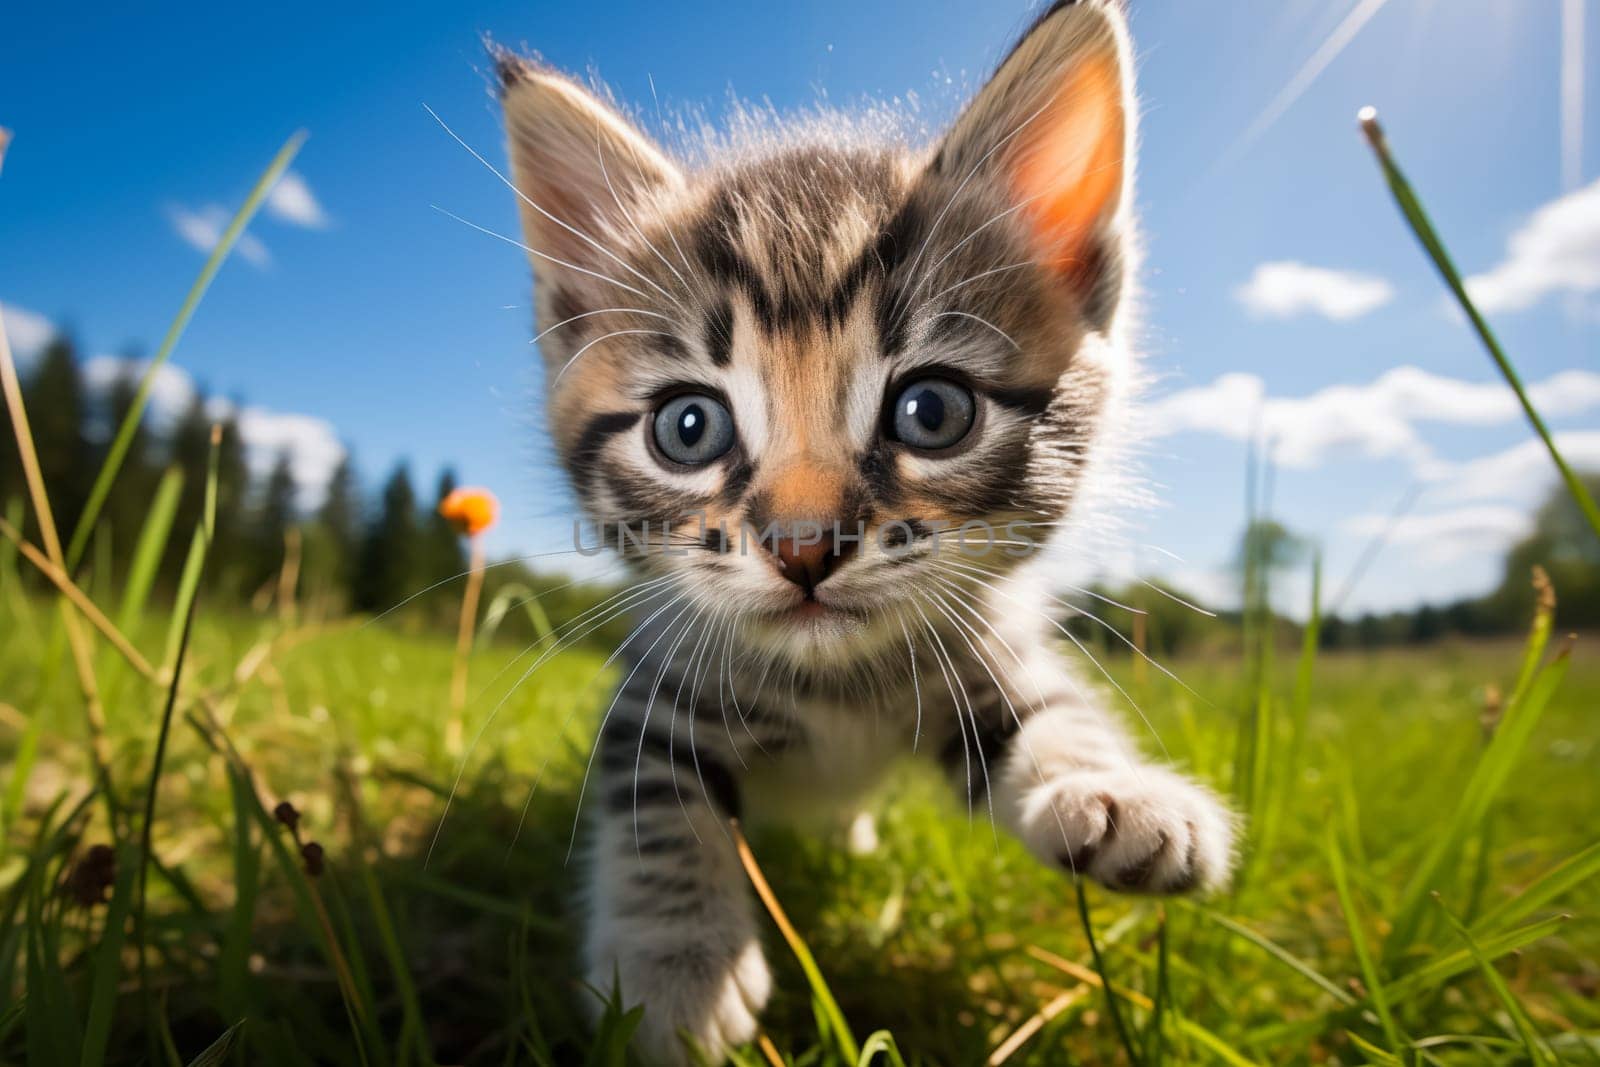 Playful Cute Kitten in Sunlit Grass by dimol